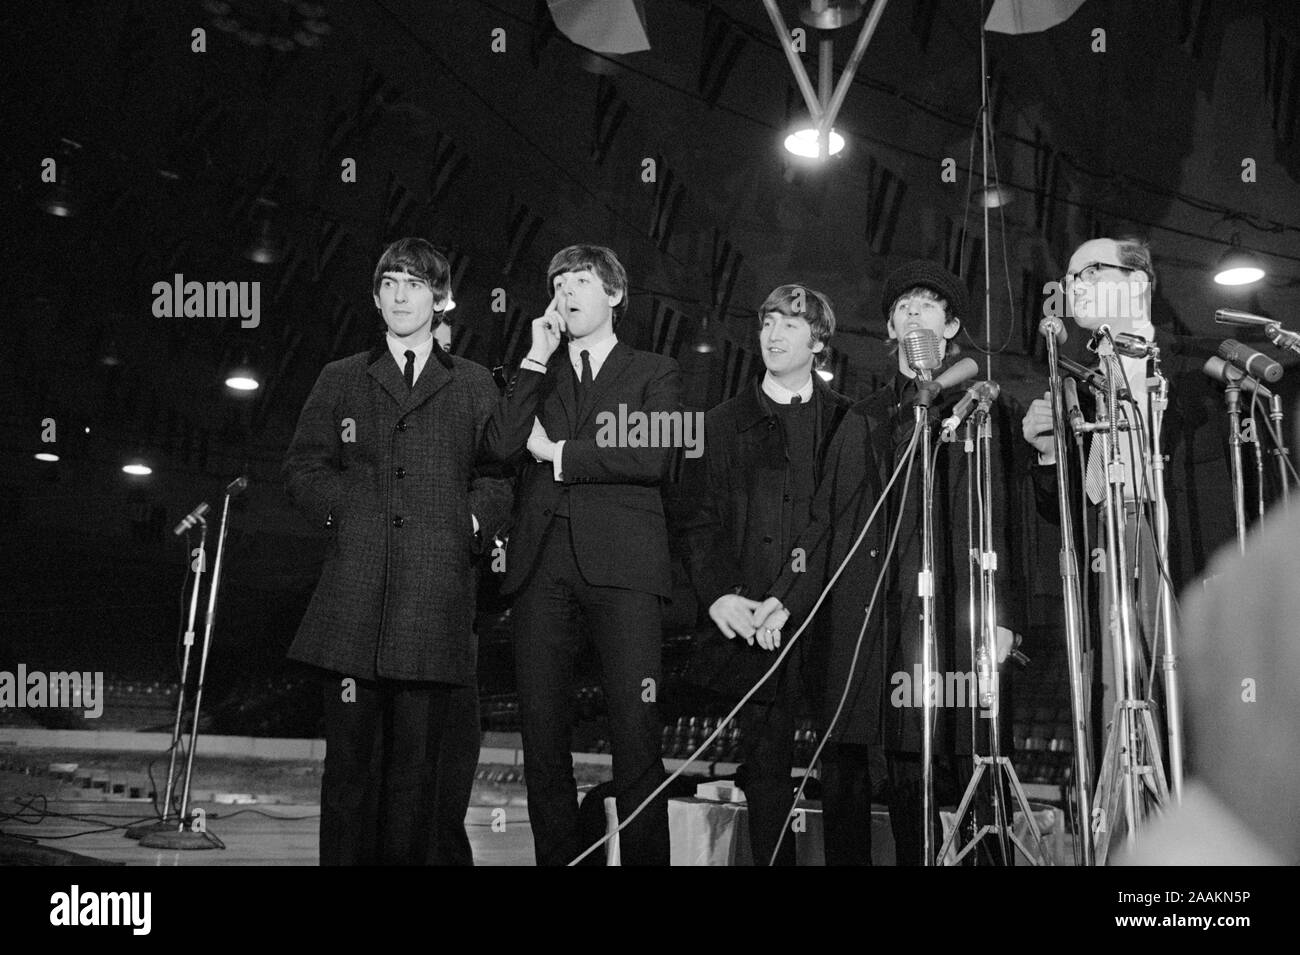 Arrivo e conferenza stampa del British Rock and Roll Band The Beatles, Washington D.C., USA, fotografia di Marion S. Trikosko, 11 Febbraio 1964 Foto Stock